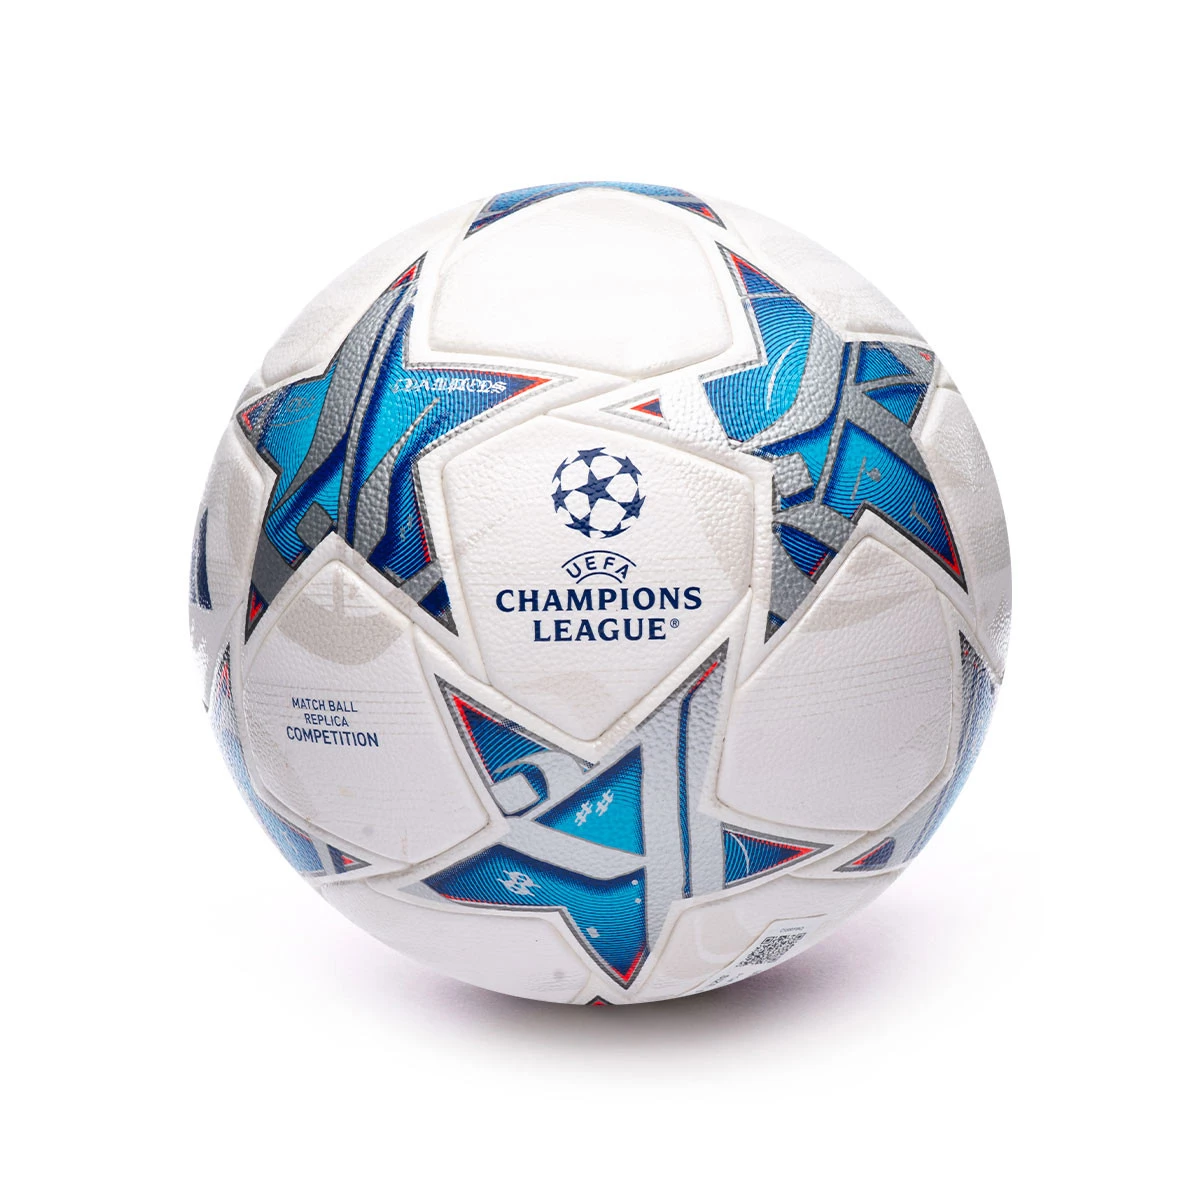 Balones Real Madrid. Elige el balón de fútbol del mejor club del mundo -  Fútbol Emotion